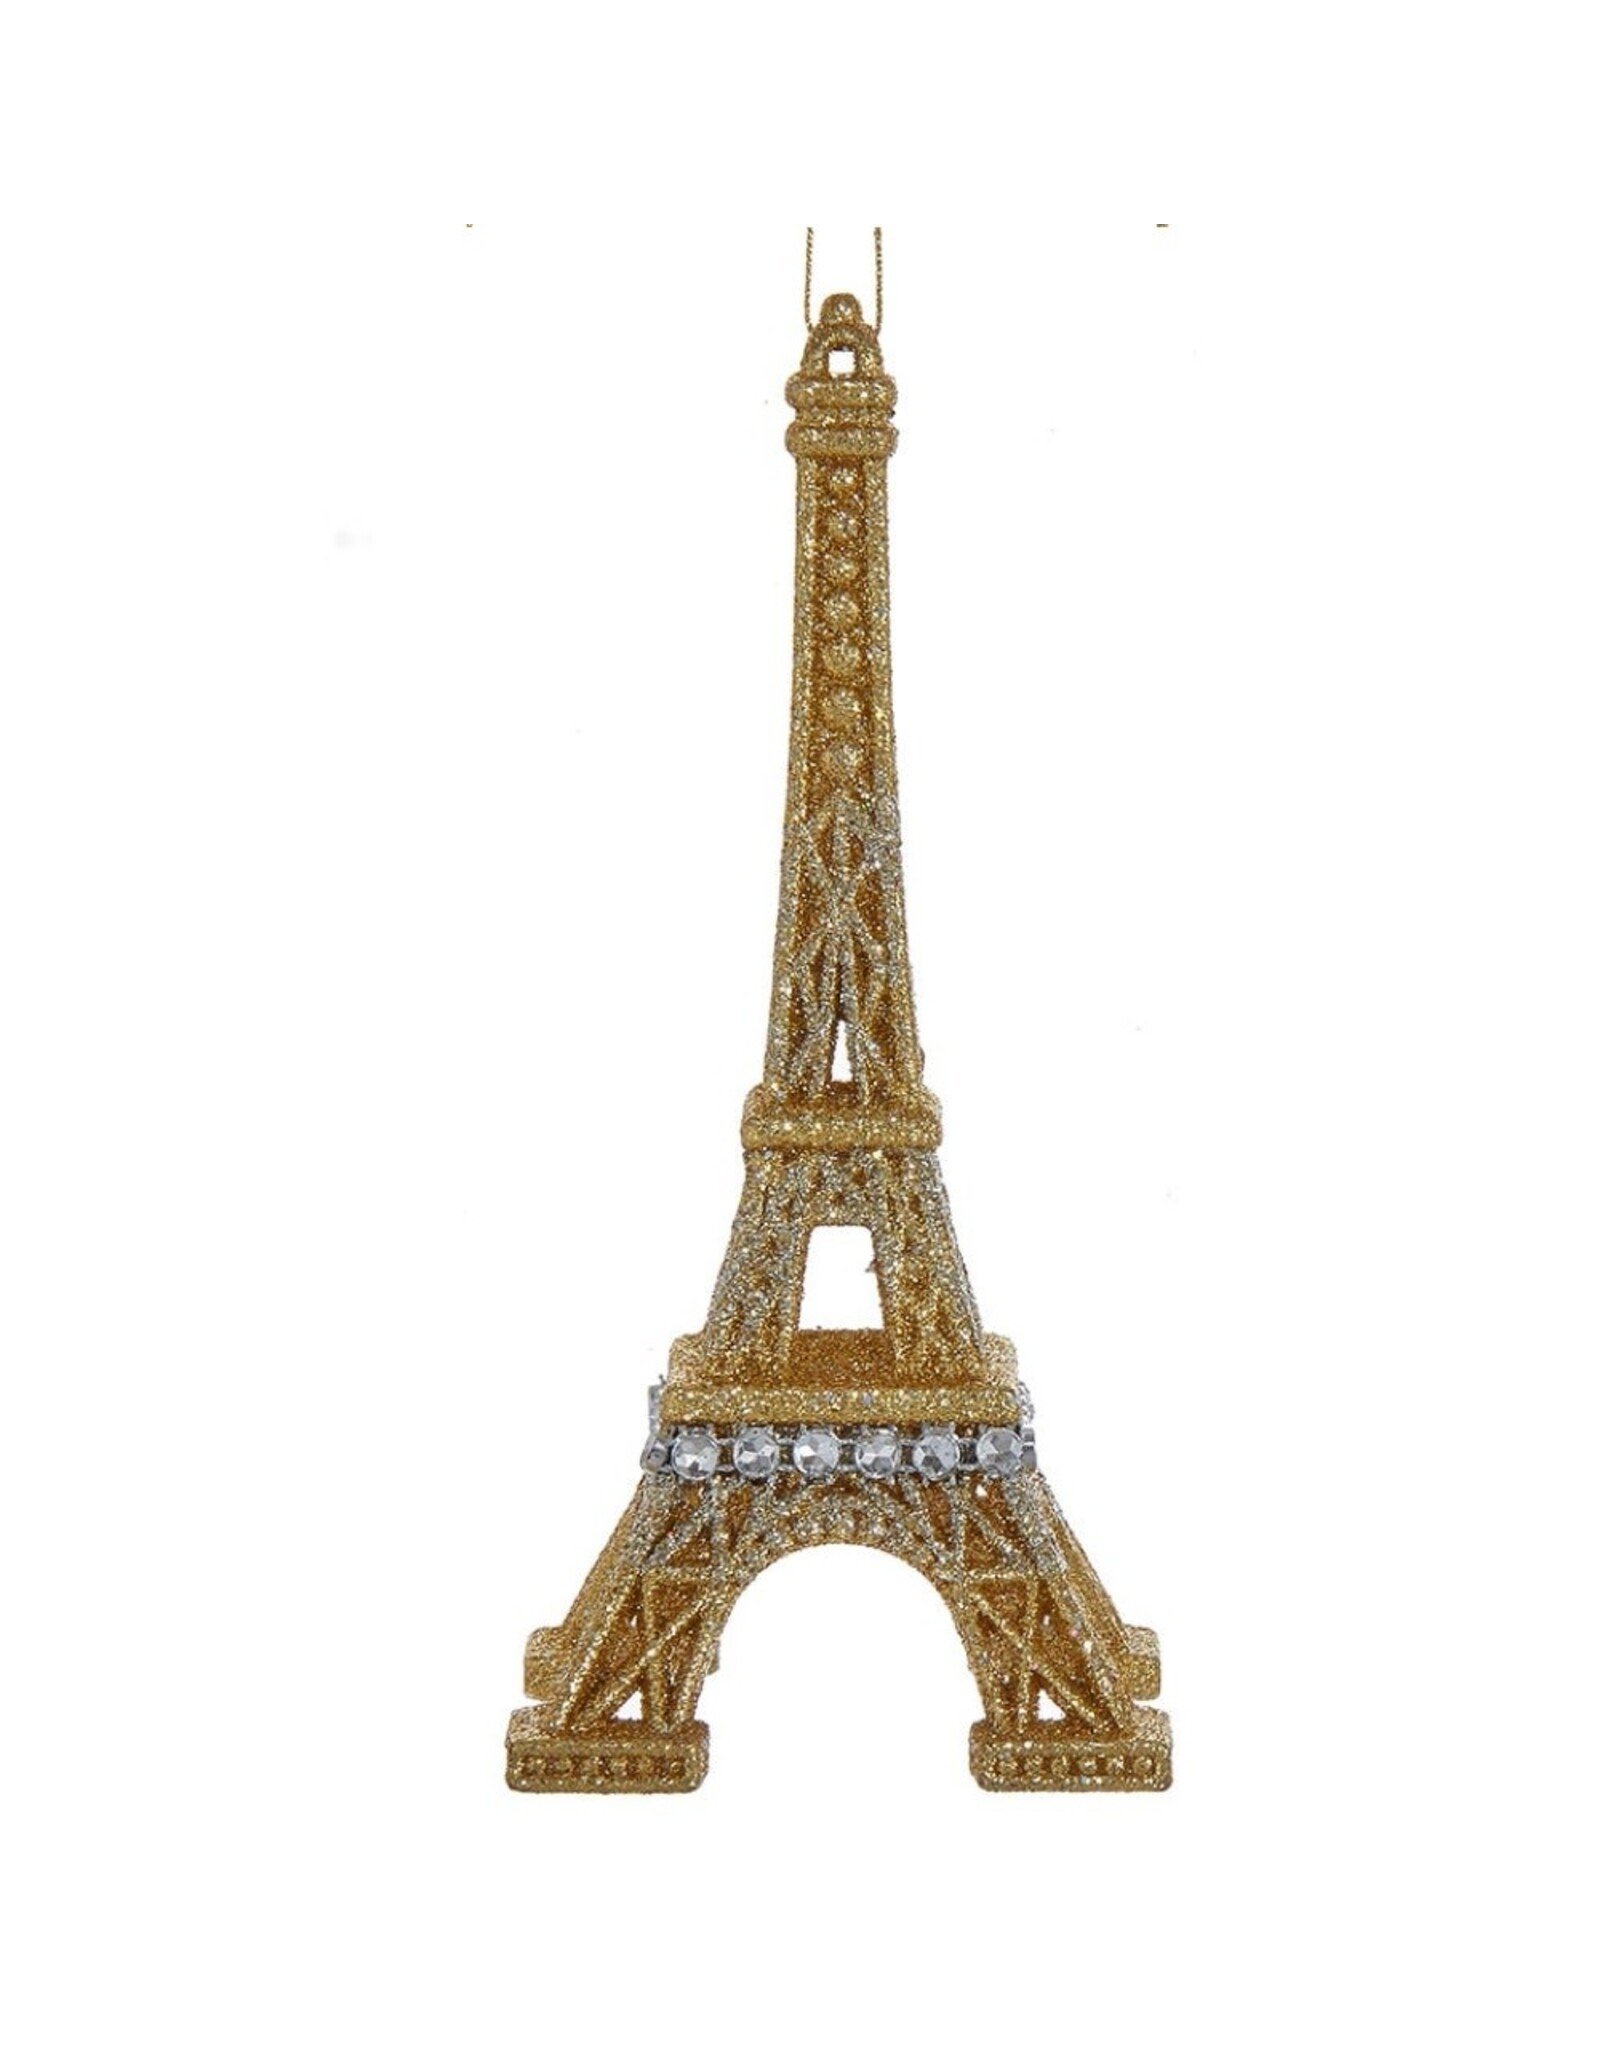 Kurt Adler Paris Eiffel Tower Glitter Ornament - G